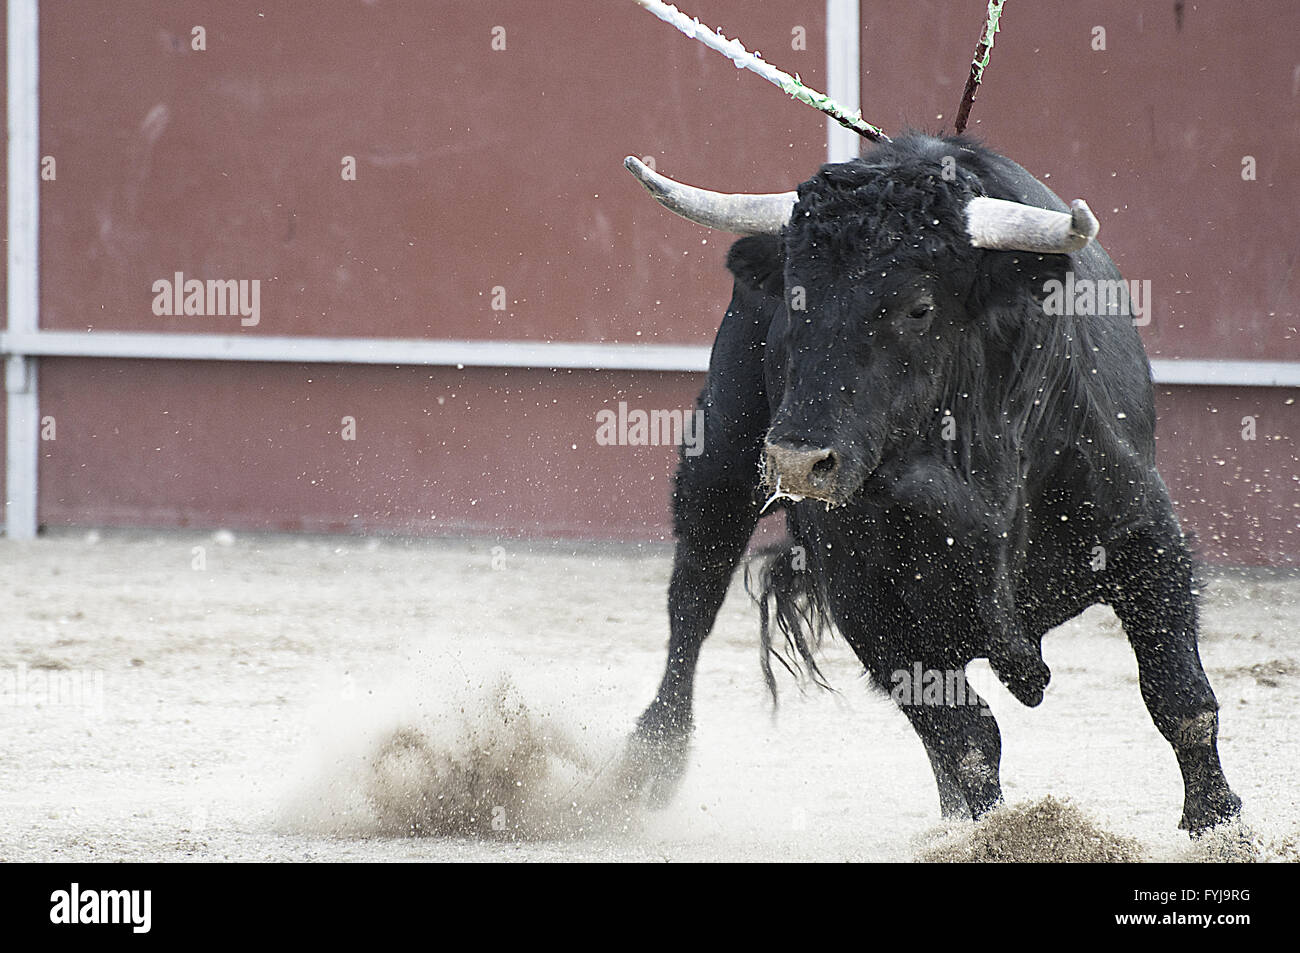 La corrida. Lotta al toro immagine dalla Spagna. Toro nero Foto Stock